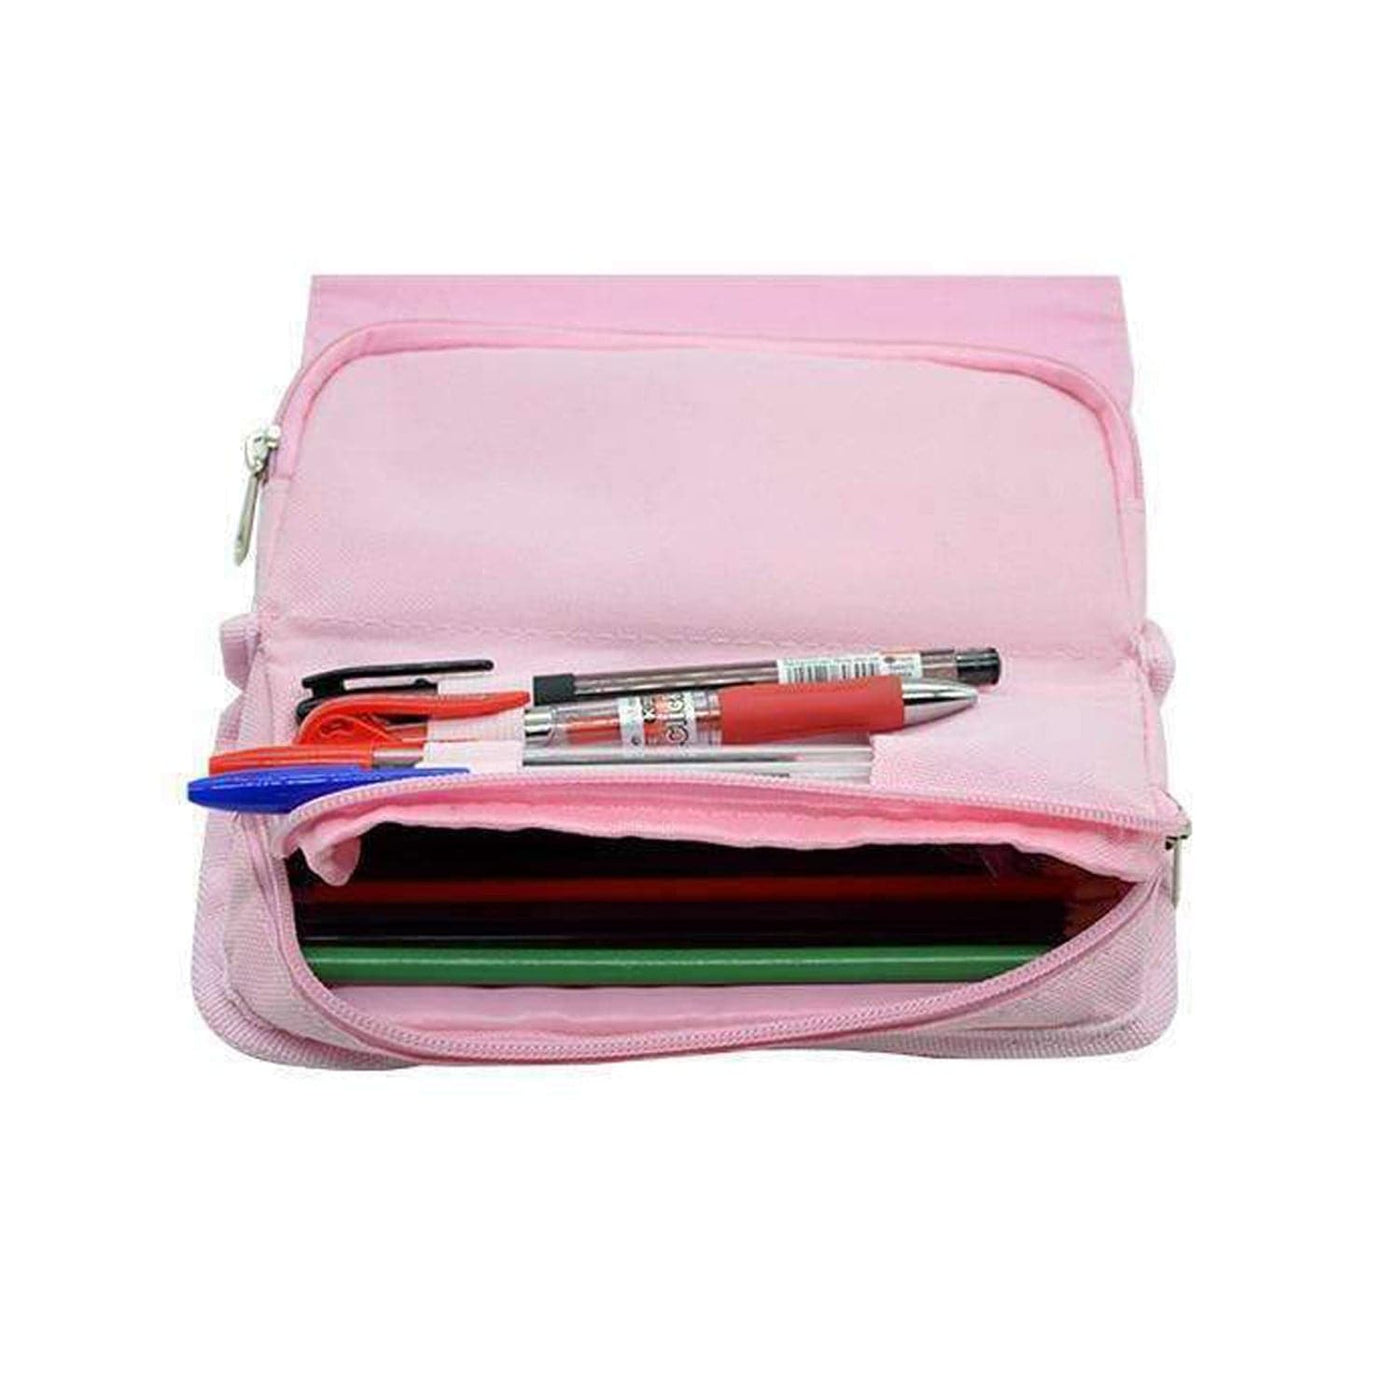 Back To Casics - Pretty Pastels - Plain Pink Pencil Case